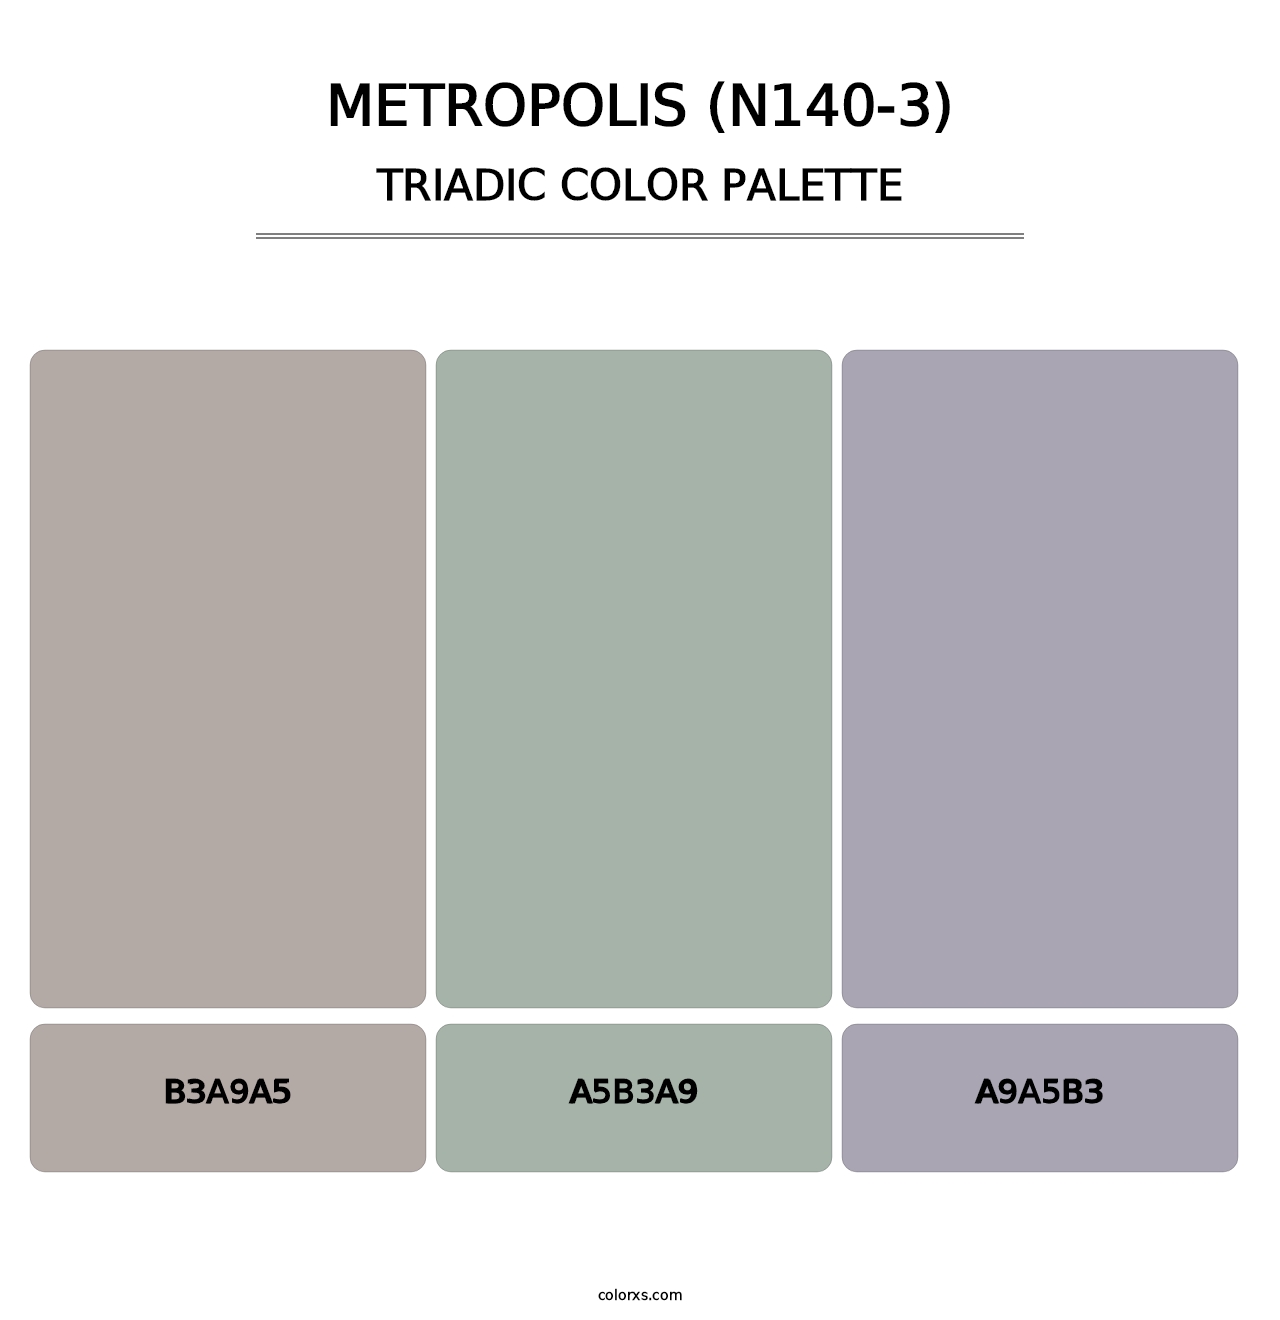 Metropolis (N140-3) - Triadic Color Palette